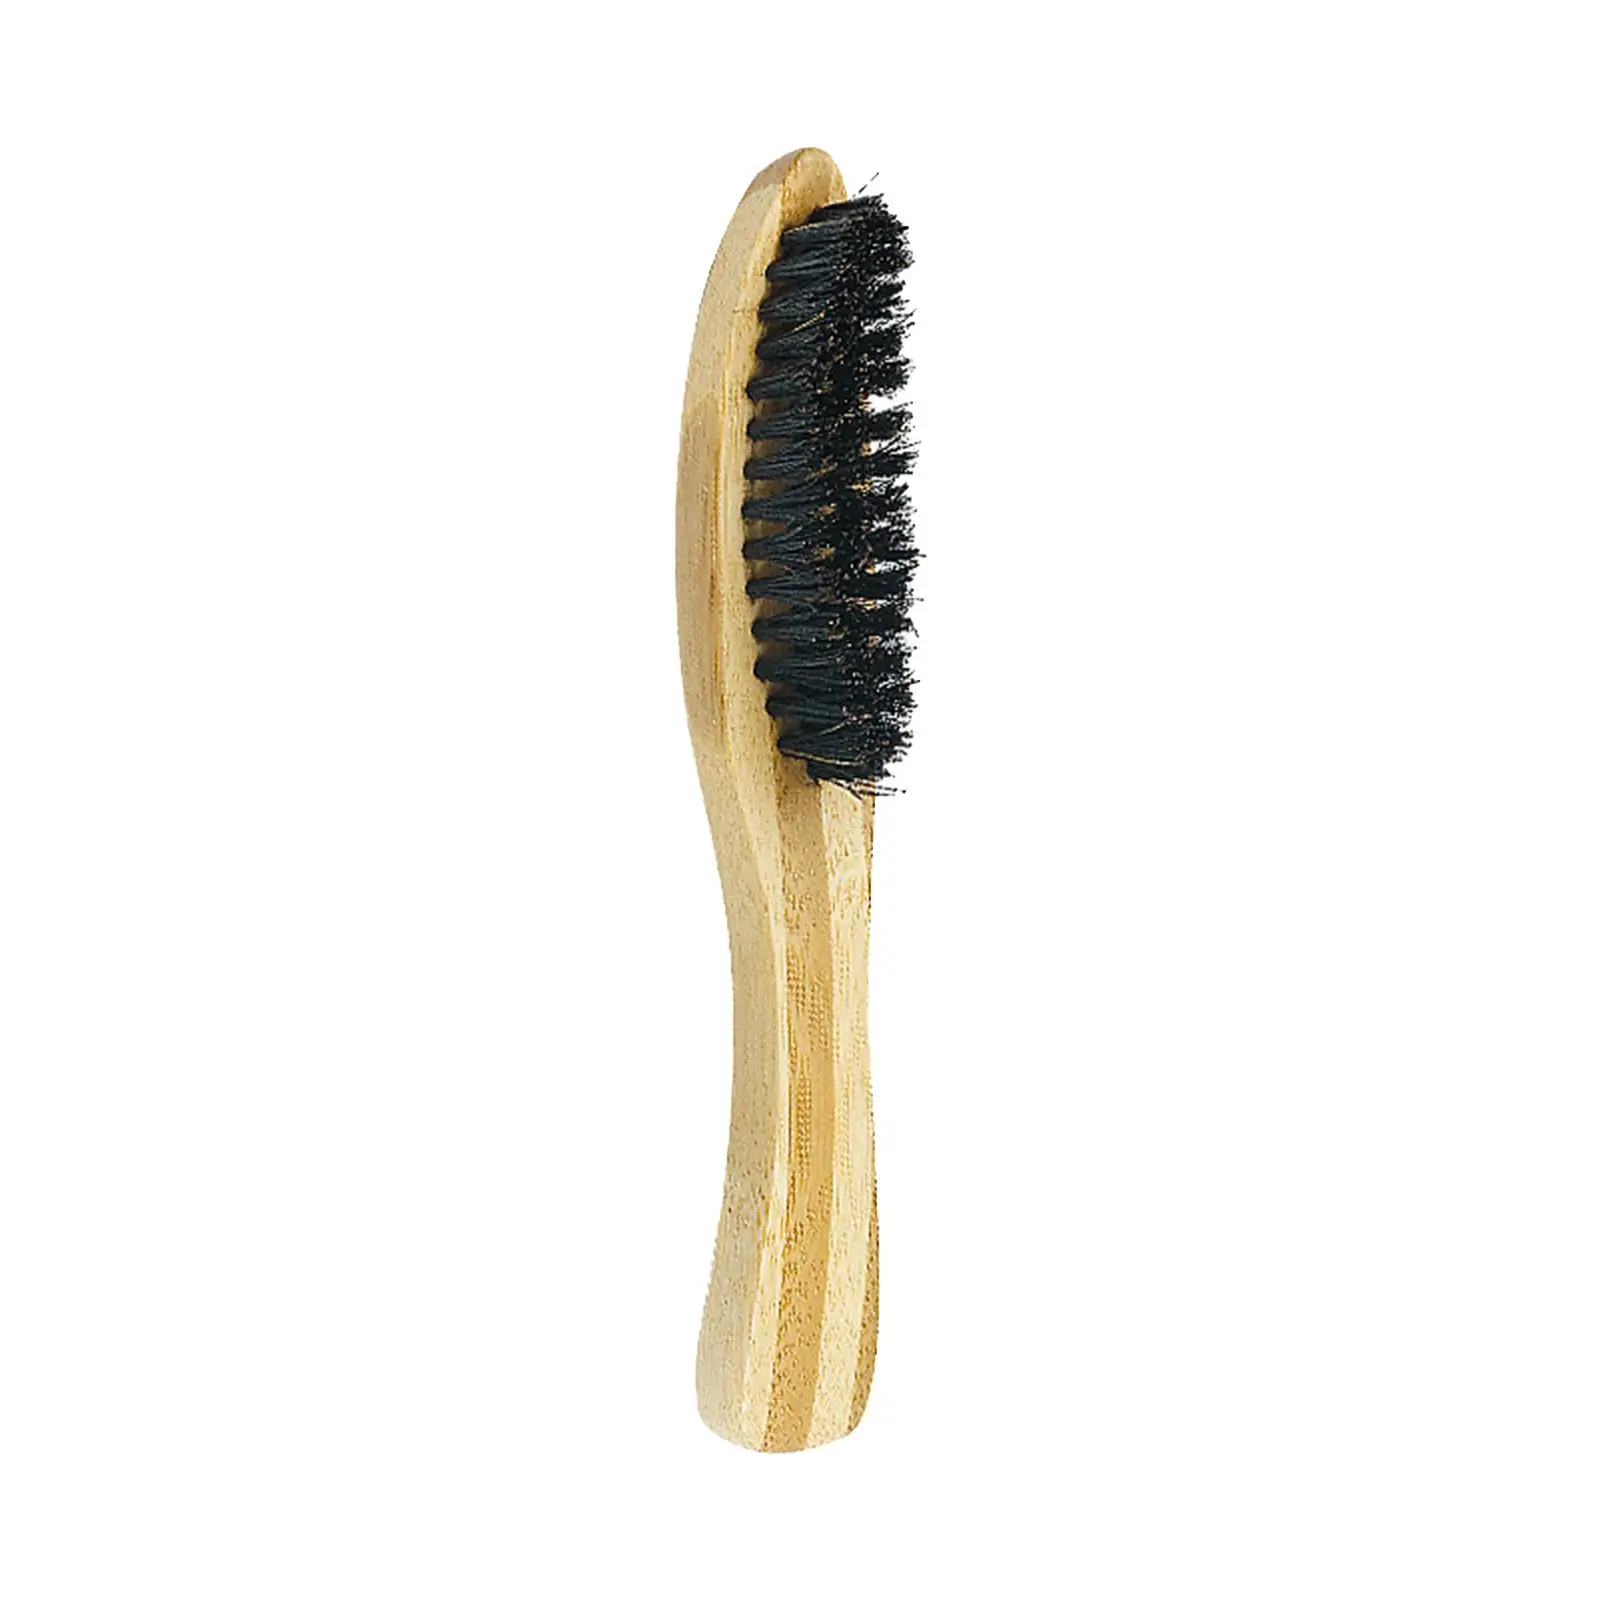 Beard Brush Shaving Comb Strong Male Mustache Brush Facial Hair Brush Nylon Bristles Hair Styling Tool for Improving Texture Men